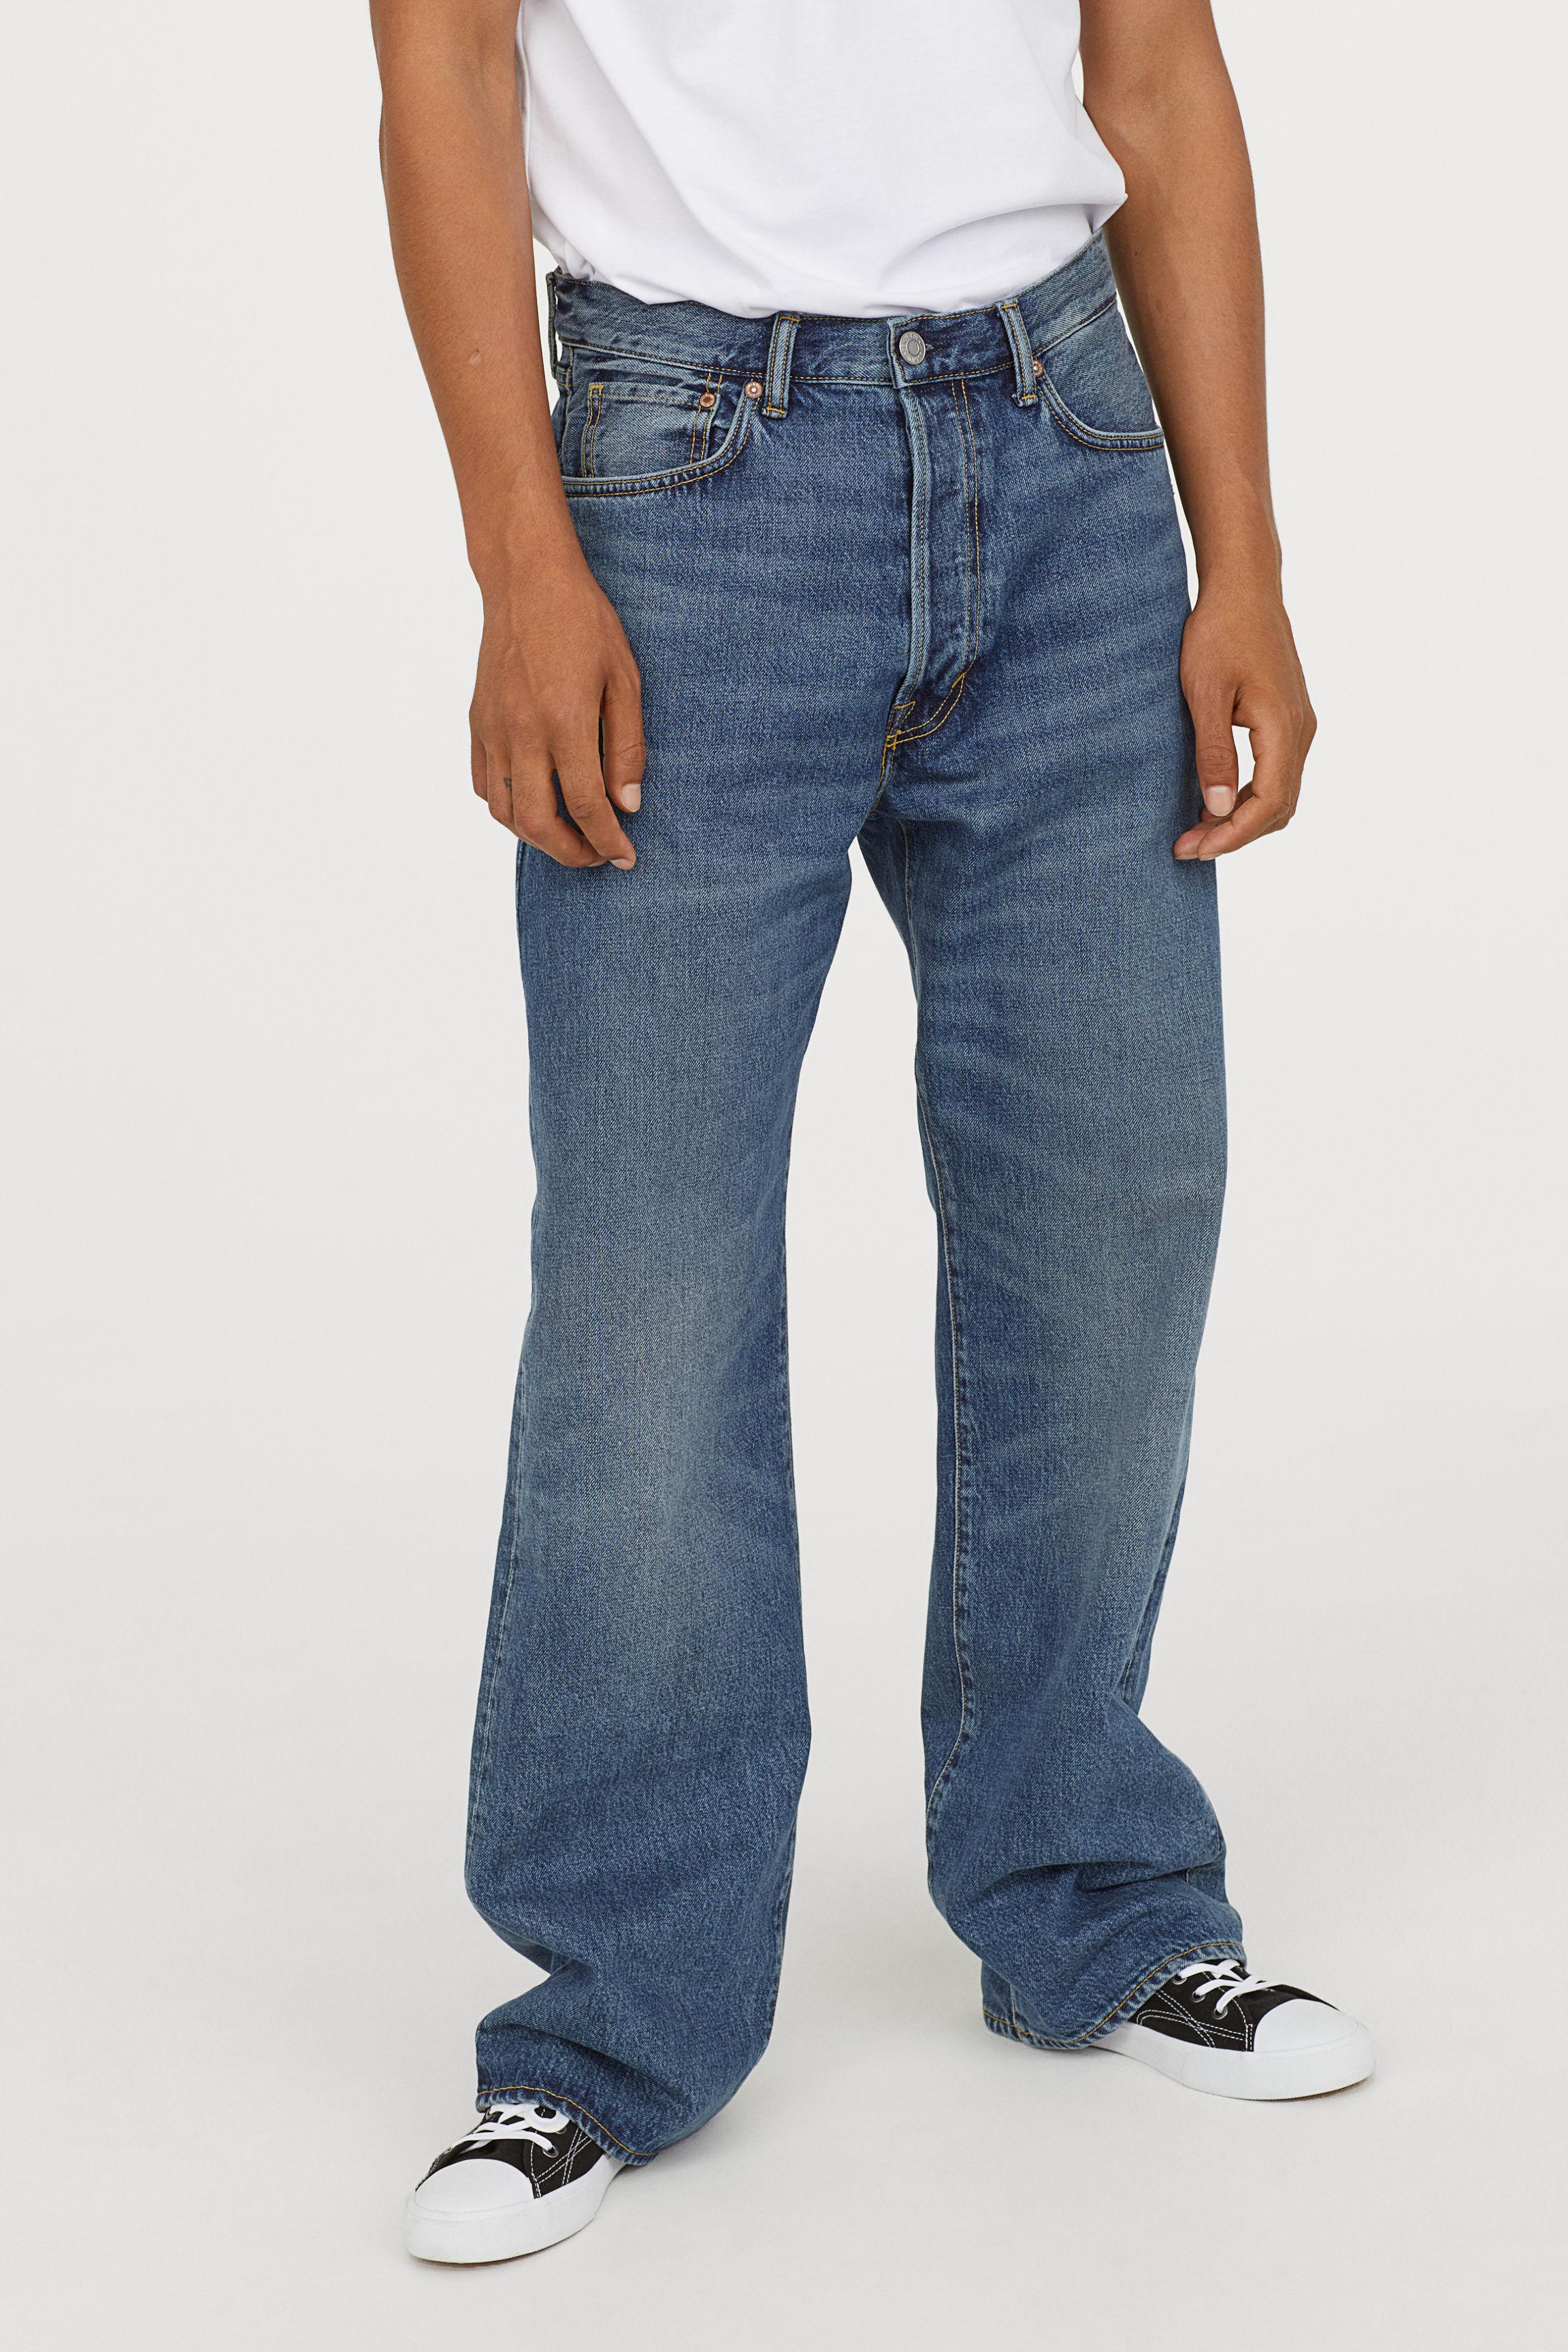 H&M Denim Vintage Loose Jeans in Denim Blue (Blue) for Men - Lyst